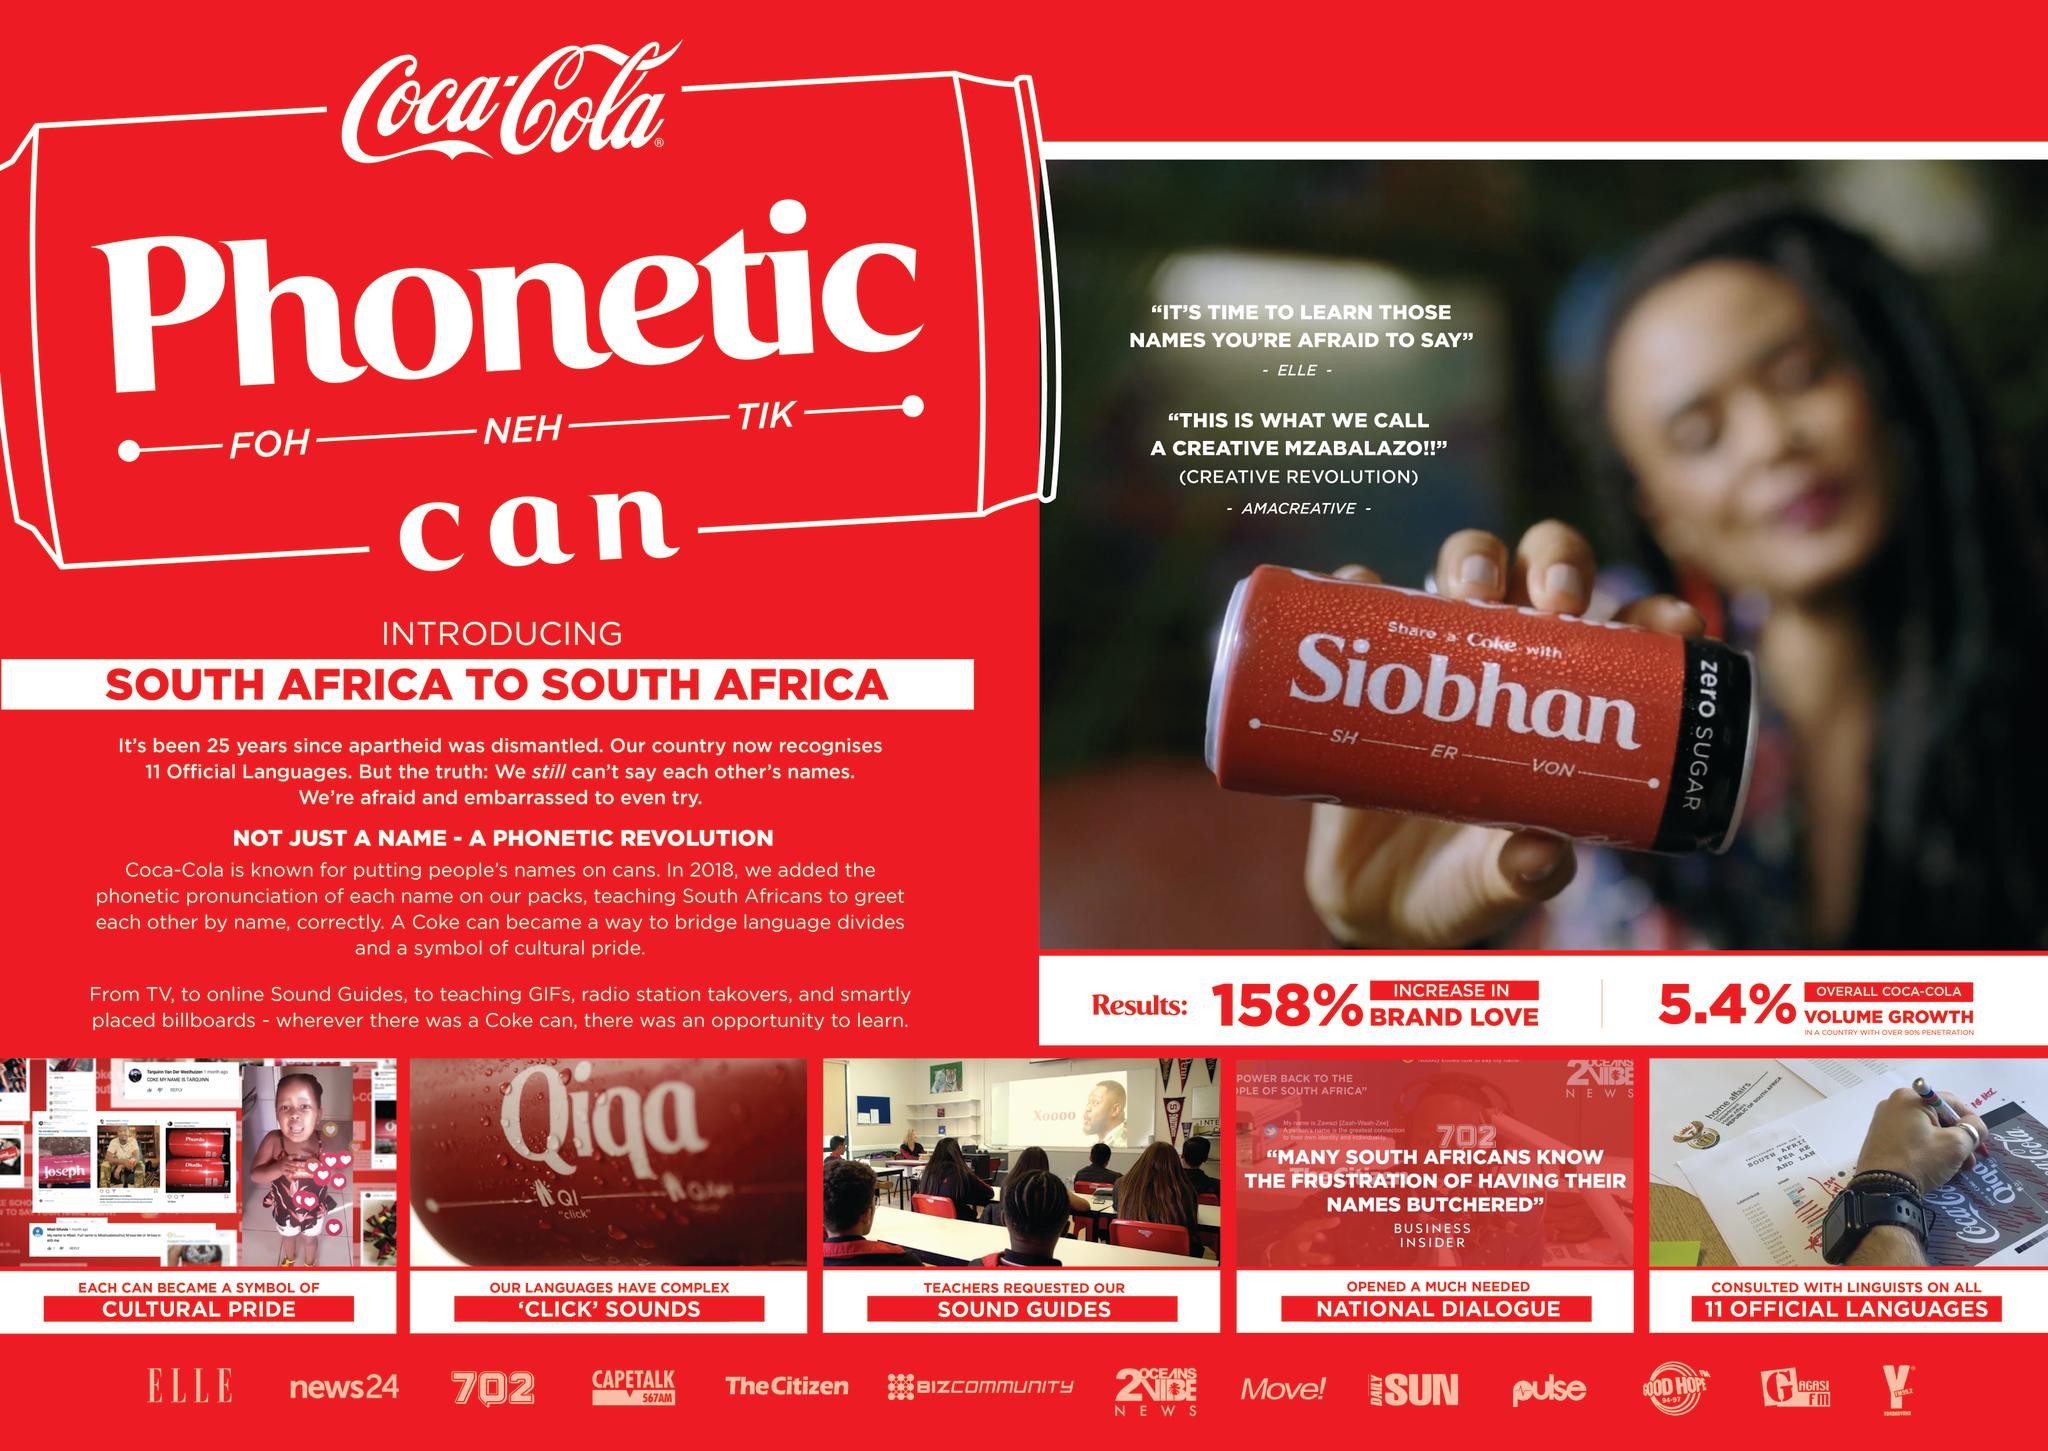 Share A Coke PR Campaign